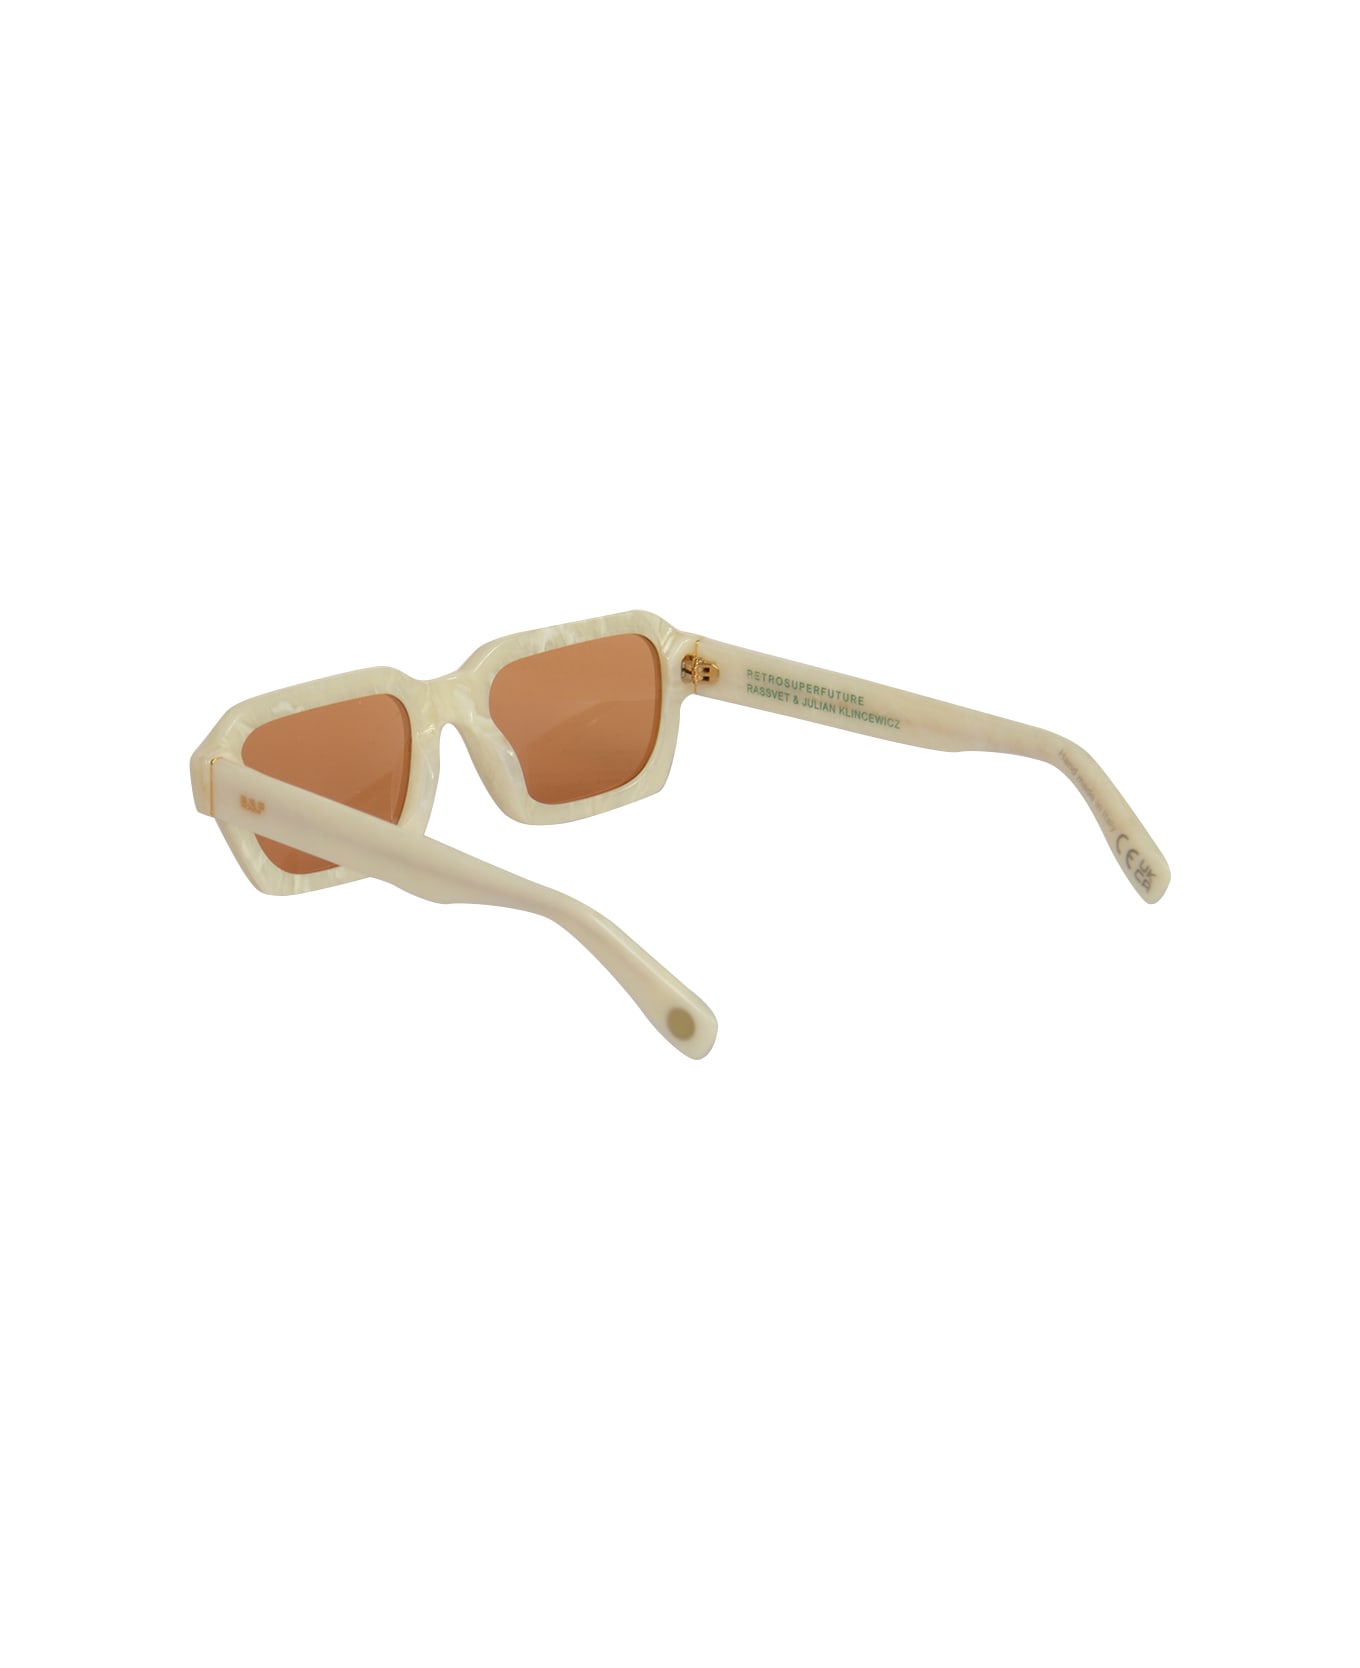 Rassvet Retro Super Future Sunglasses - White